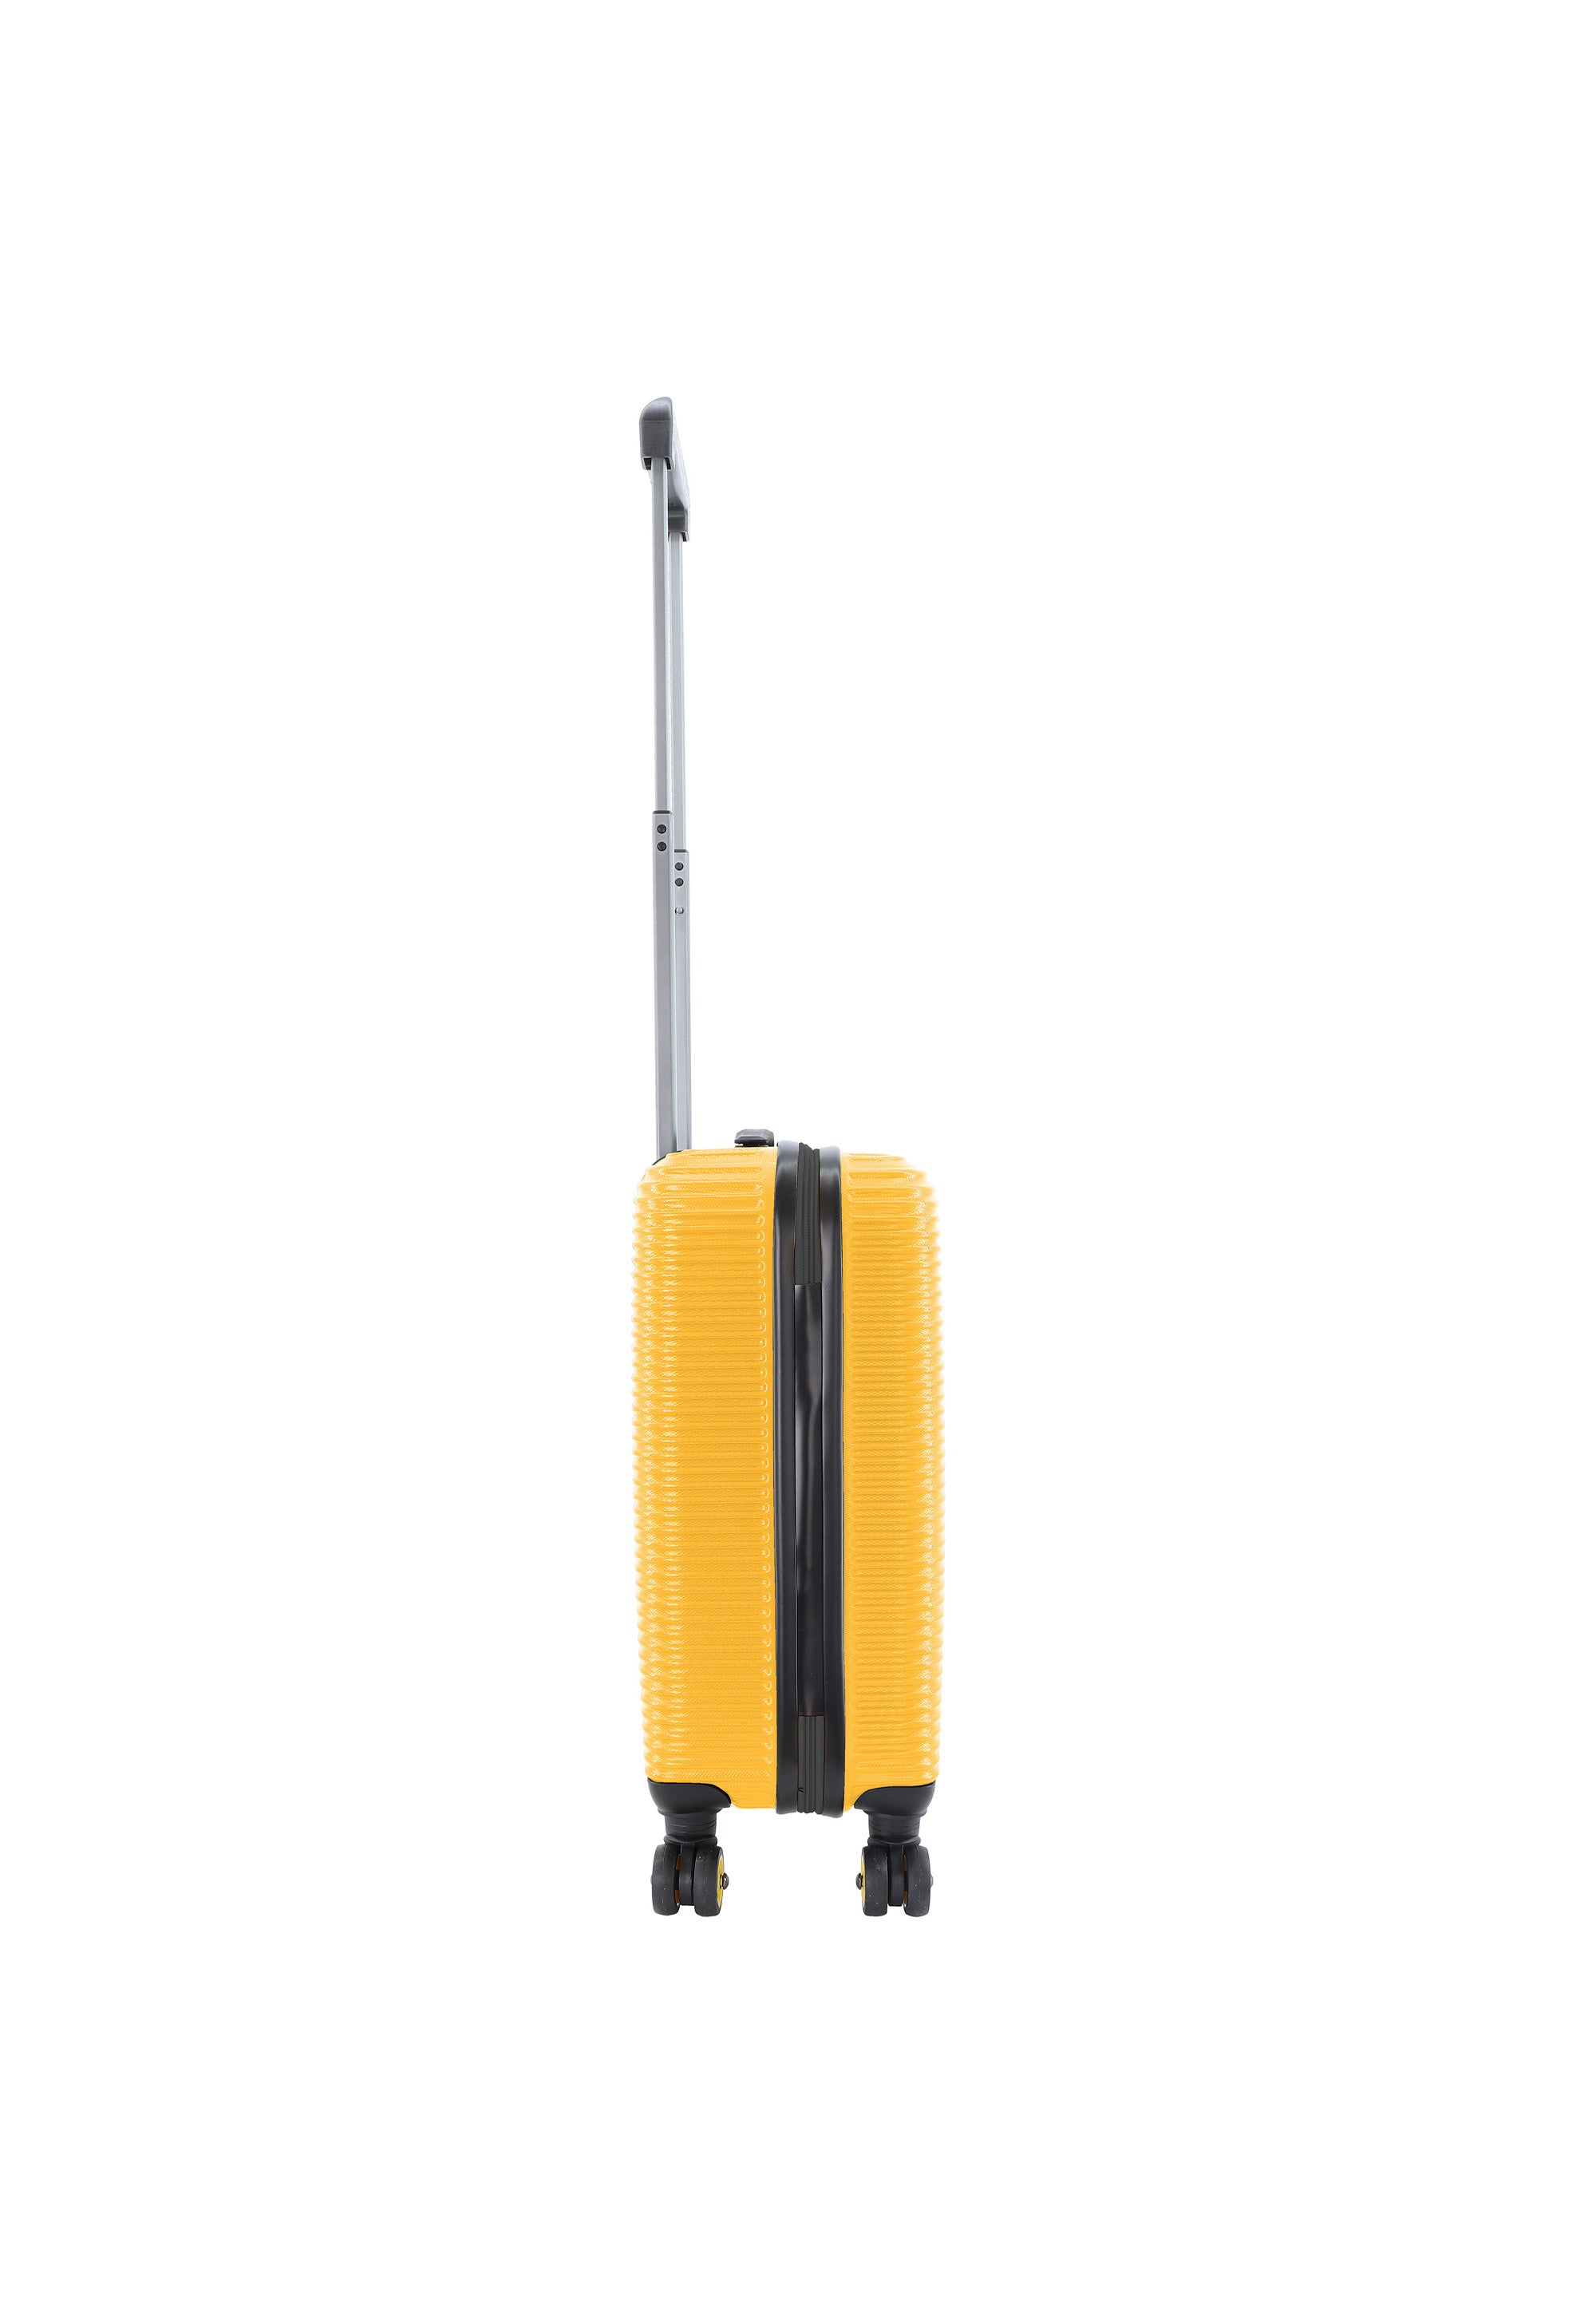 National Geographic - Abroad Handgepäck Hartschalenkoffer / Trolley / Reisekoffer - 54 cm - (Small) - Gelb